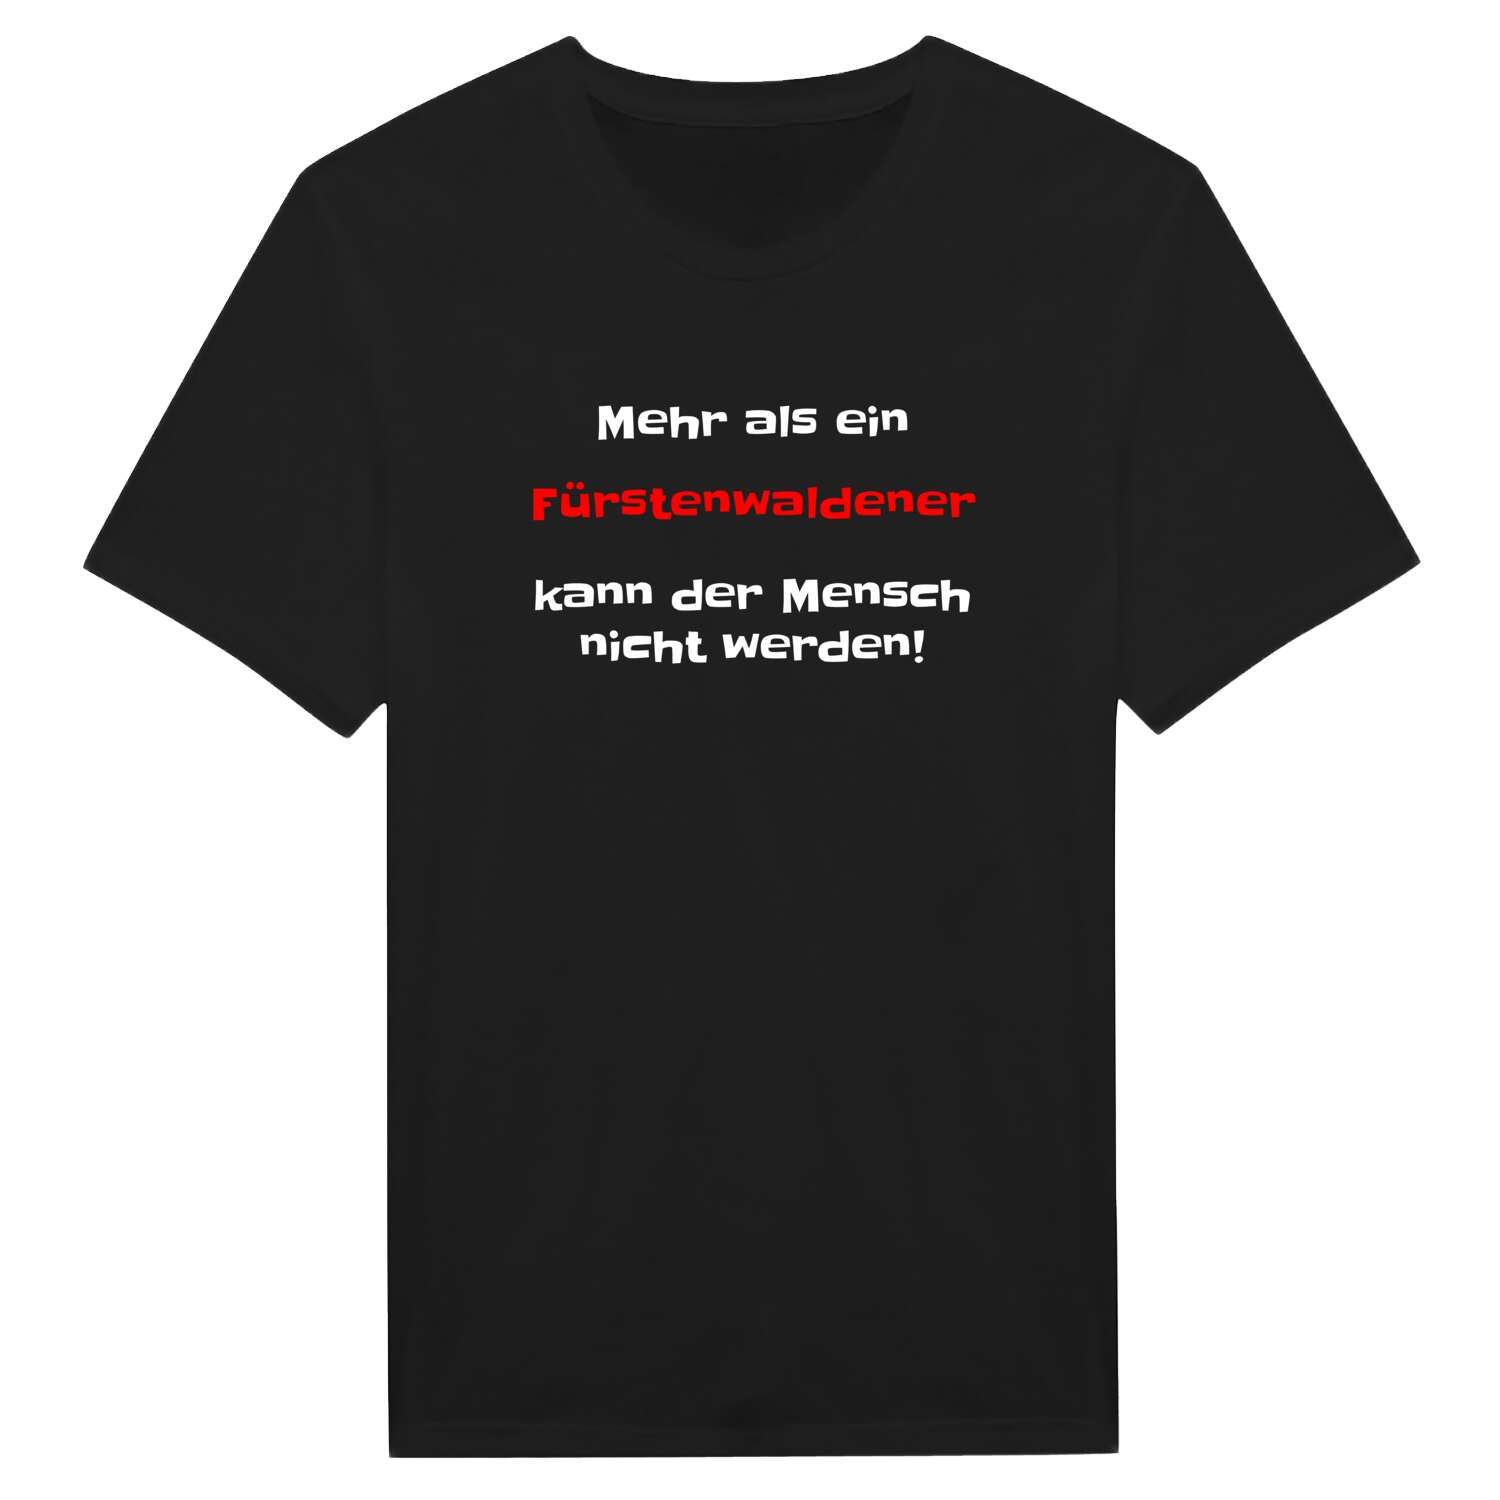 Fürstenwalde T-Shirt »Mehr als ein«